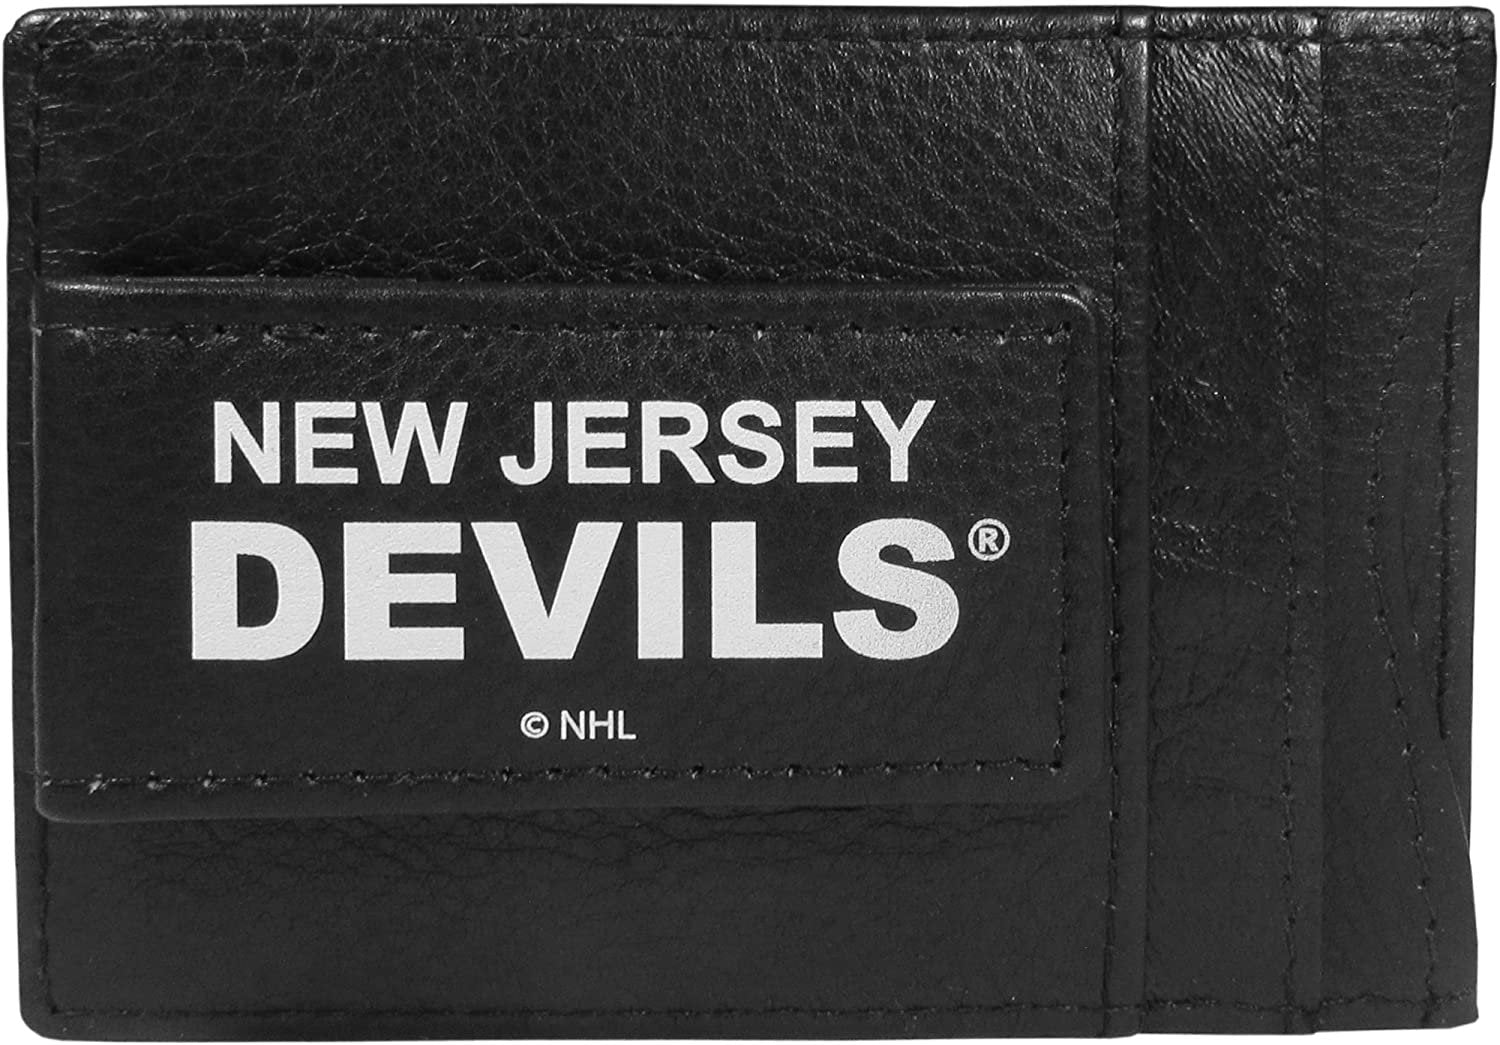 New Jersey Devils Black Leather Wallet, Front Pocket Magnetic Money Clip, Printed Logo